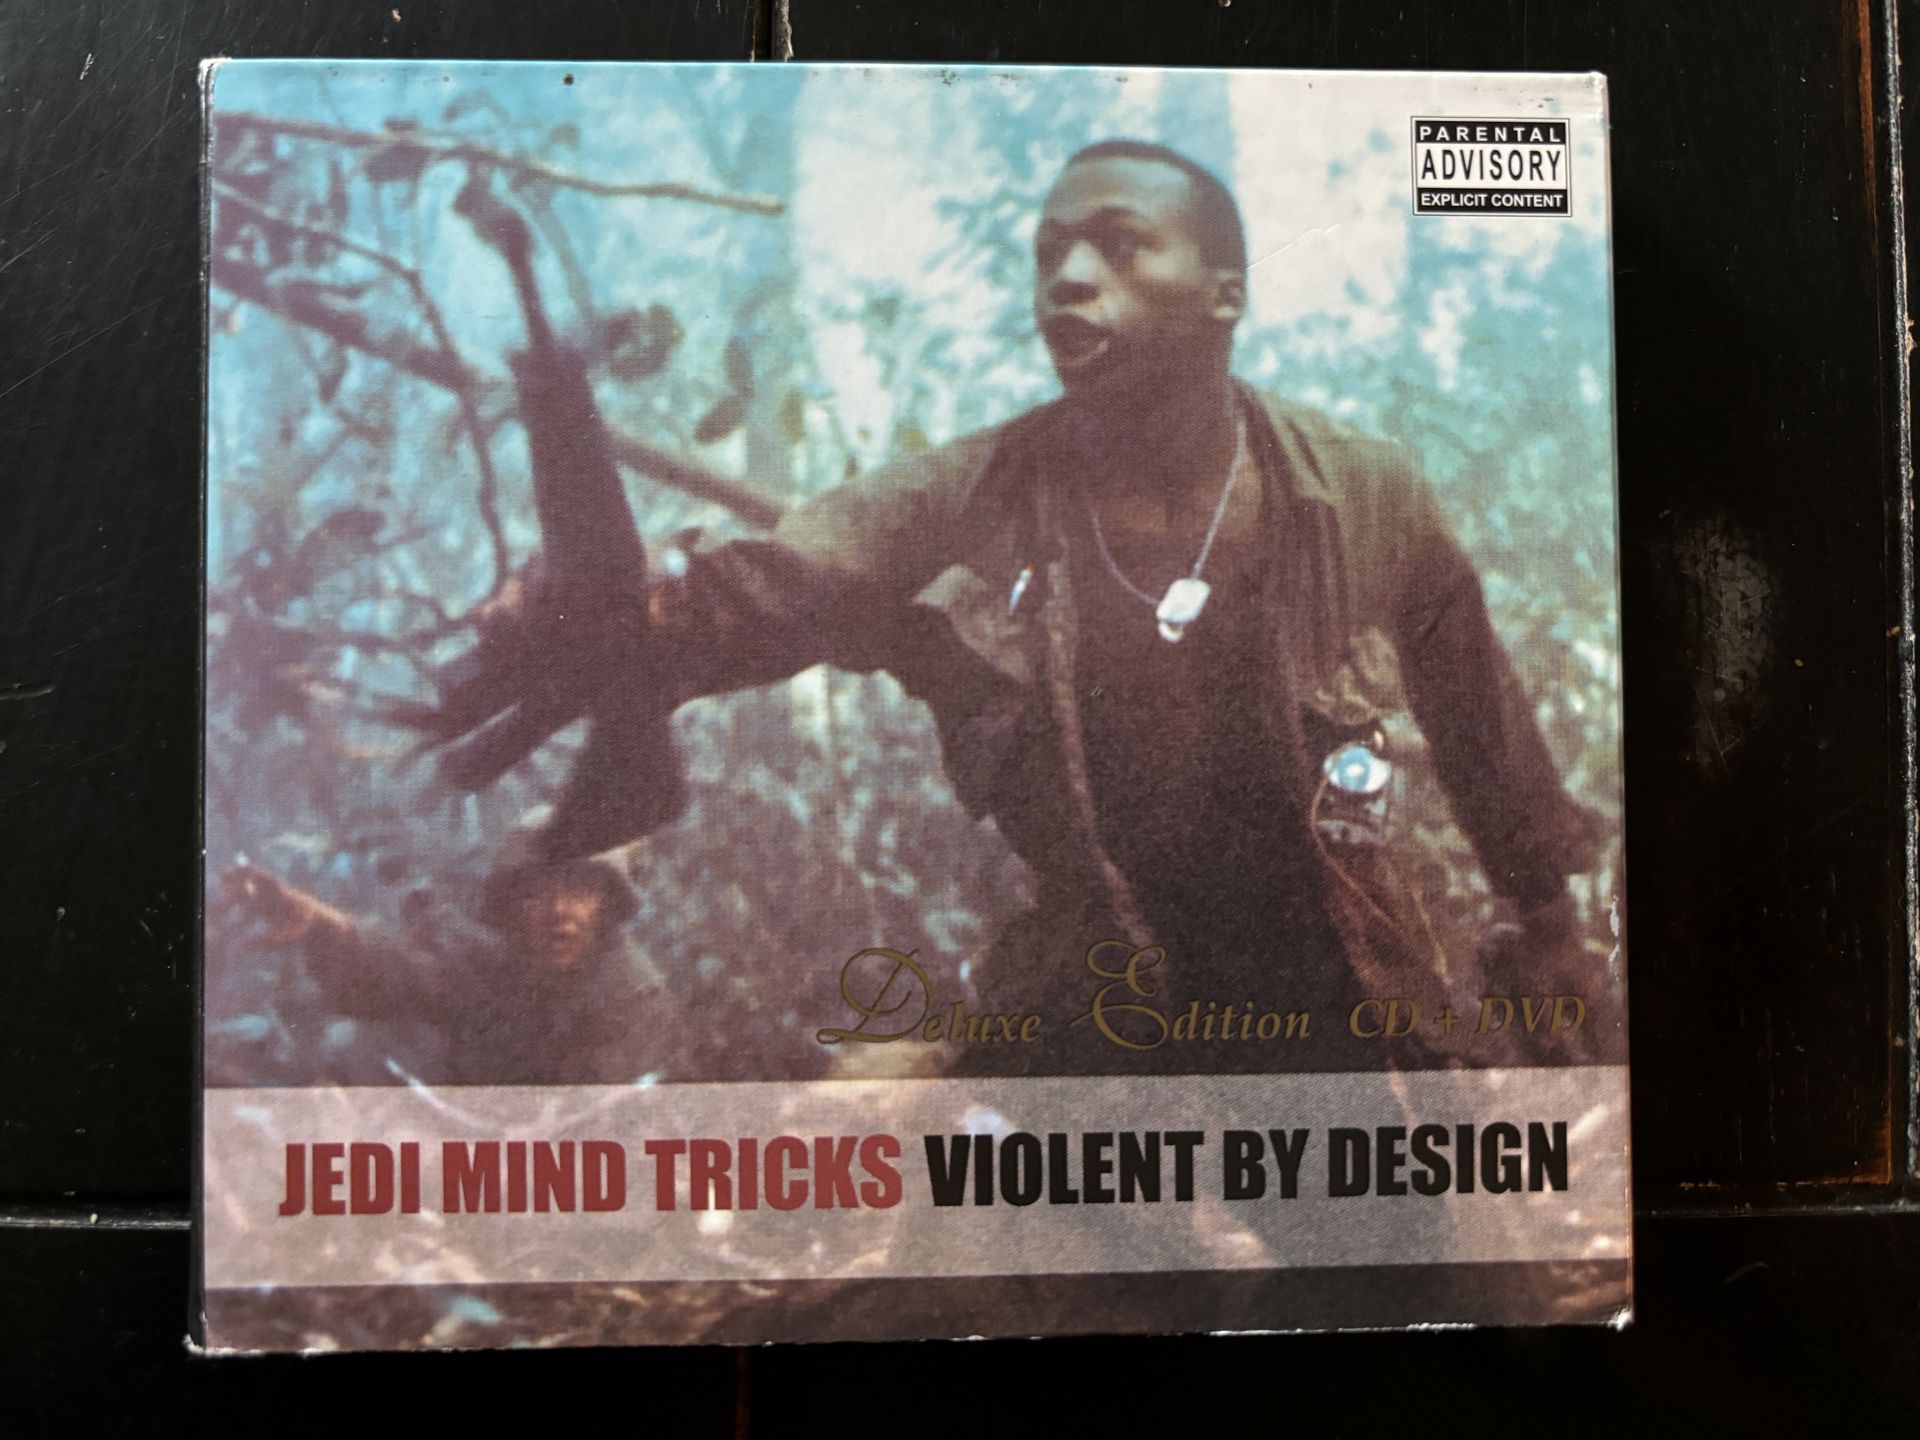 Jedi Mind Tricks - Violent By Design